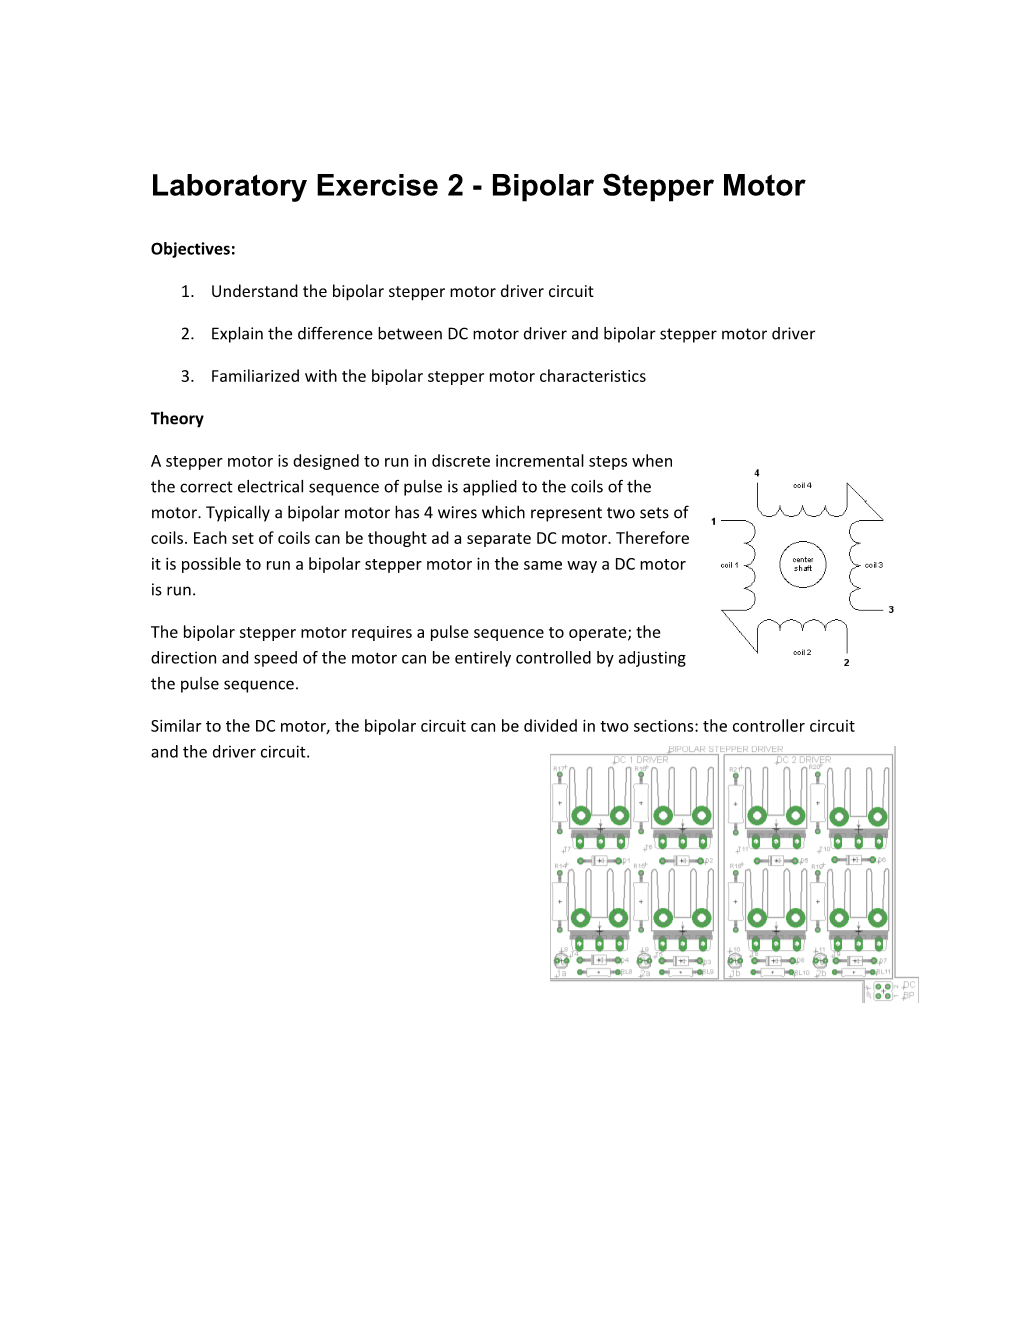 Laboratory Exercise 2 - Bipolar Stepper Motor